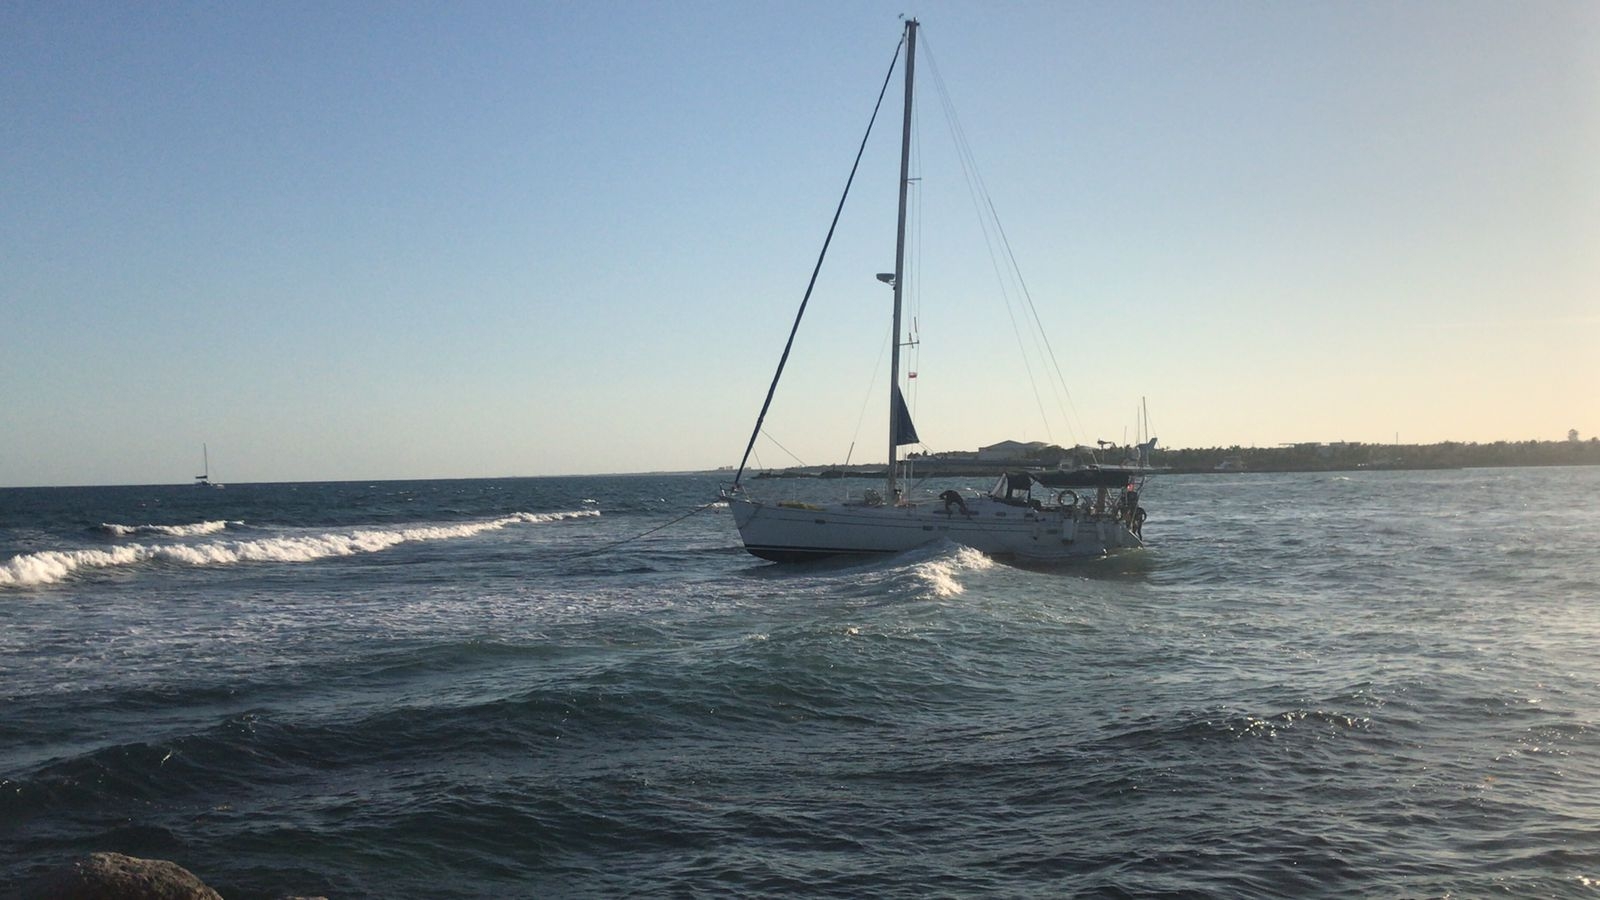 La Capitanía de Puerto en Playa del Carmen, aunque ya tiene conocimiento de la situación no ha emitido ninguna información